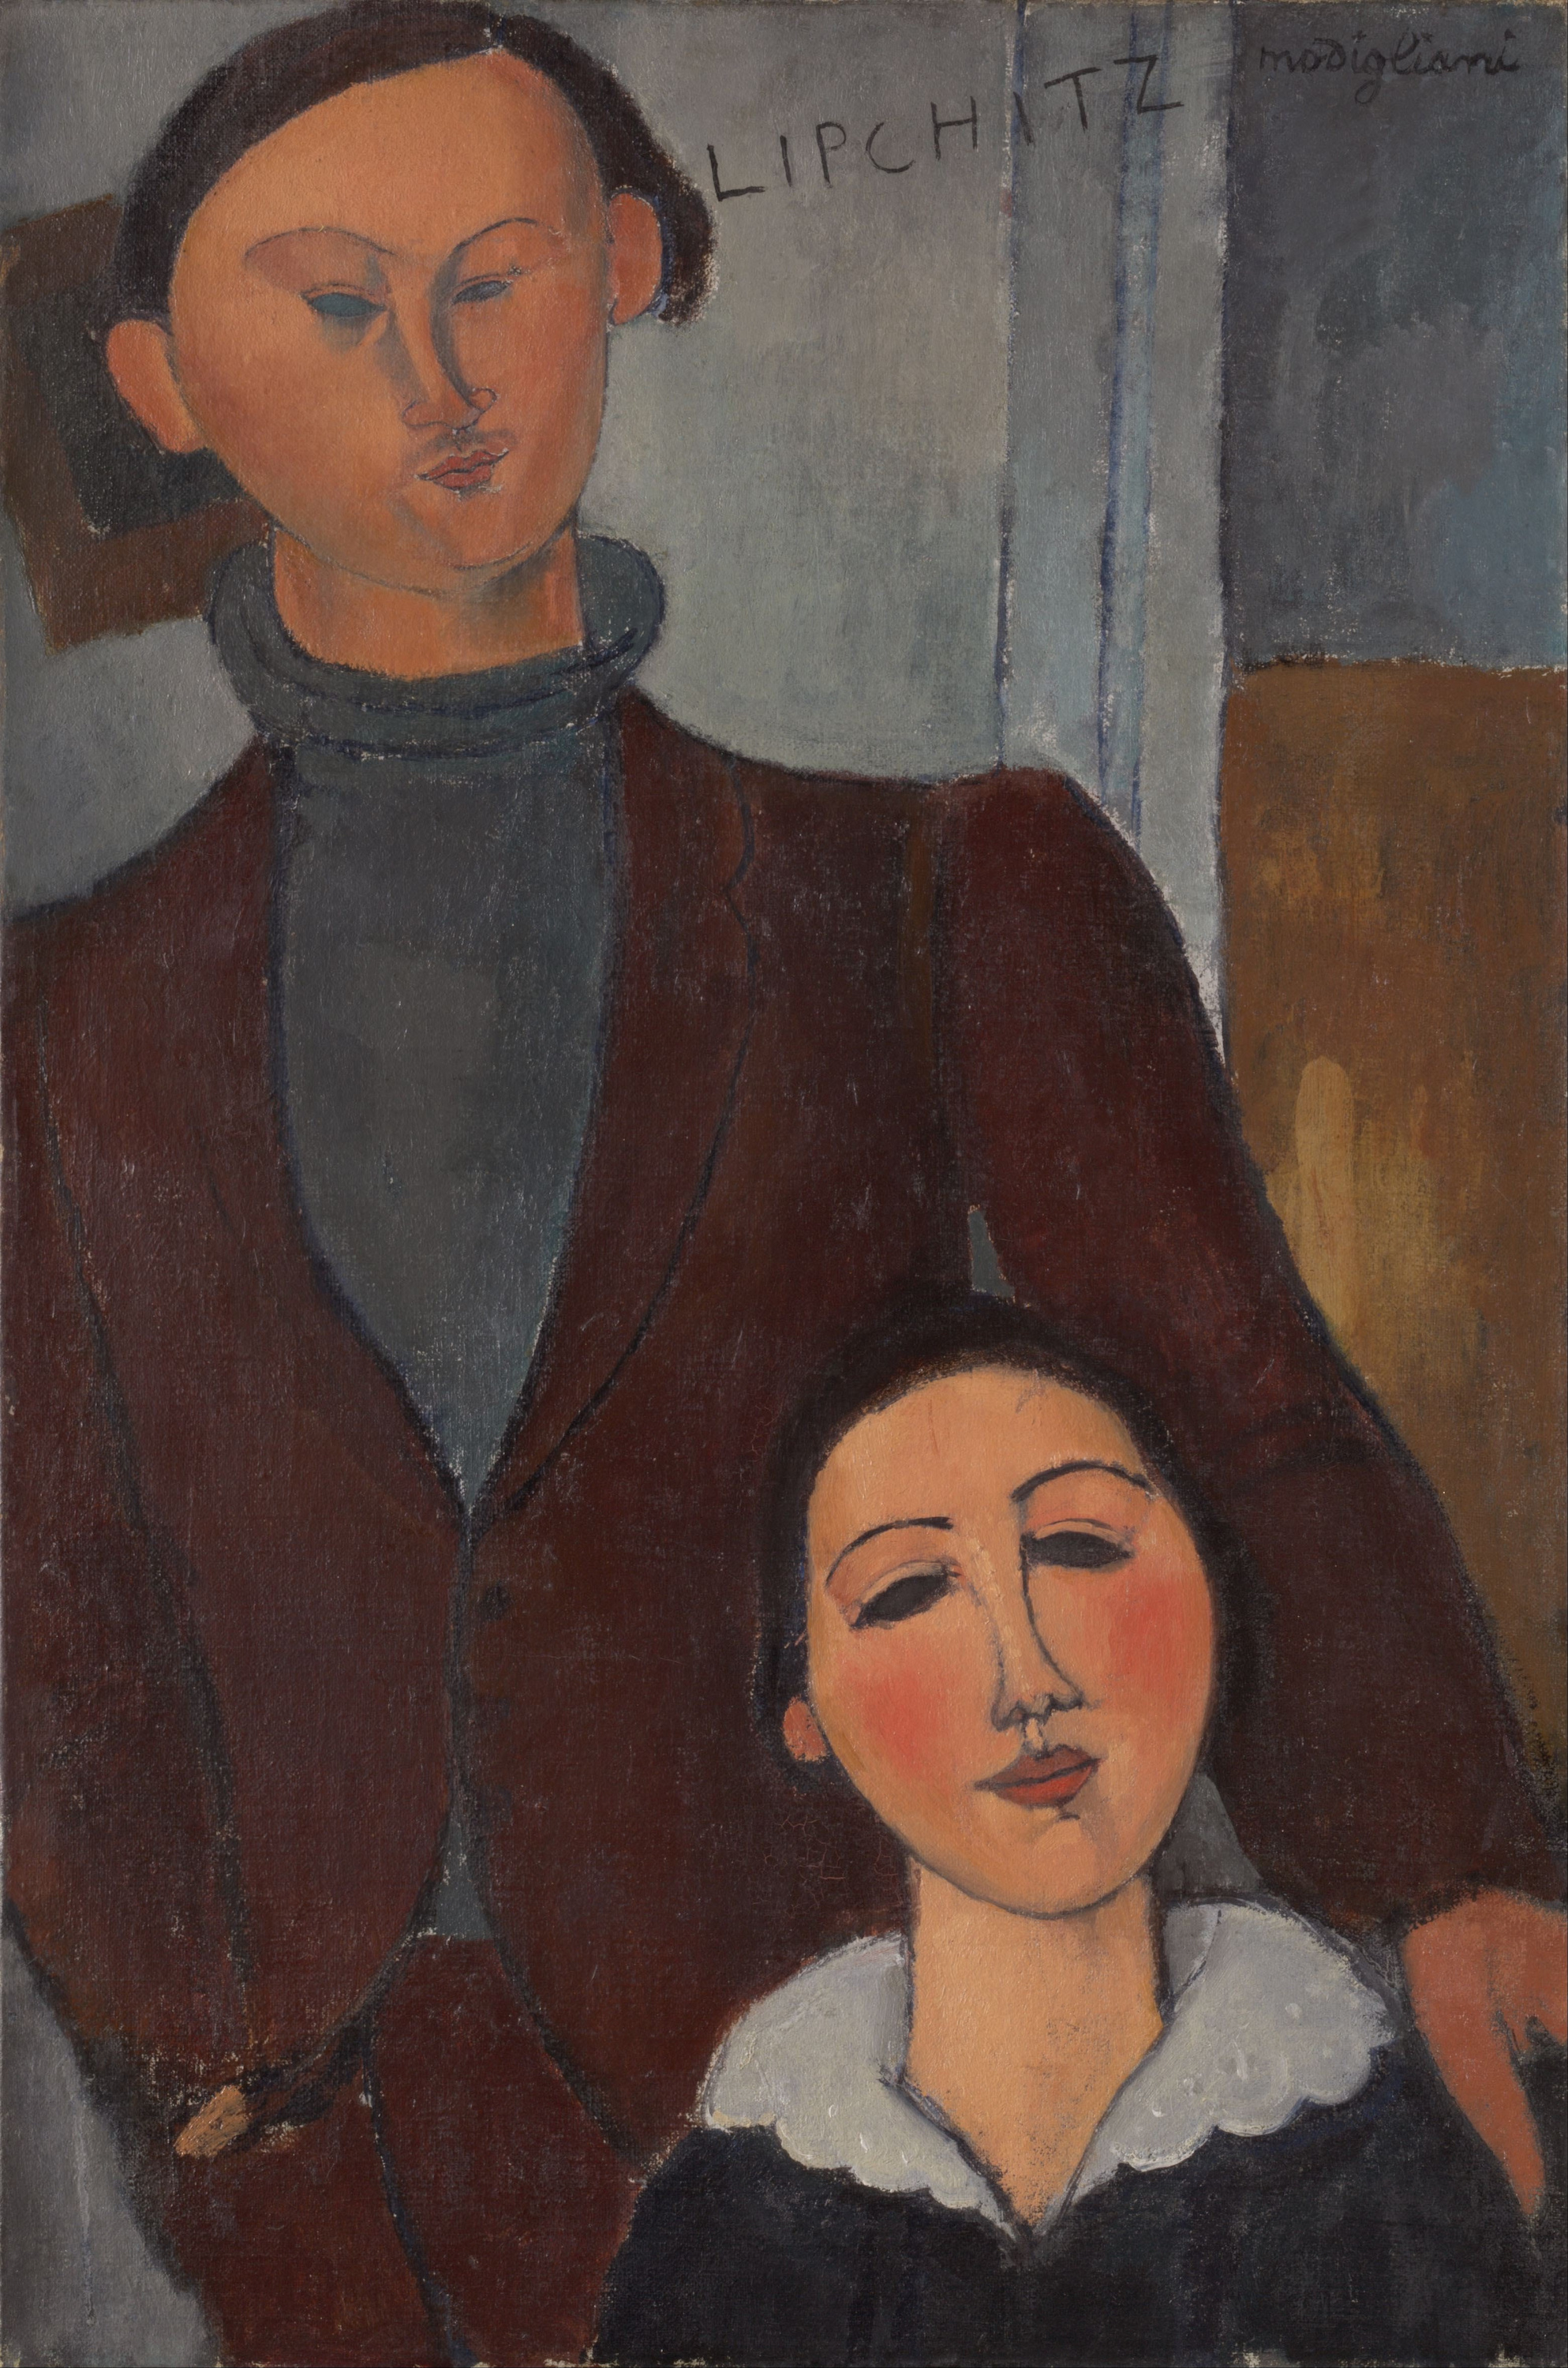 雅克和贝特·利普希茨 by 阿梅代奥 莫迪利亚尼 - 1916 - 81 × 54 cm 芝加哥藝術博物館